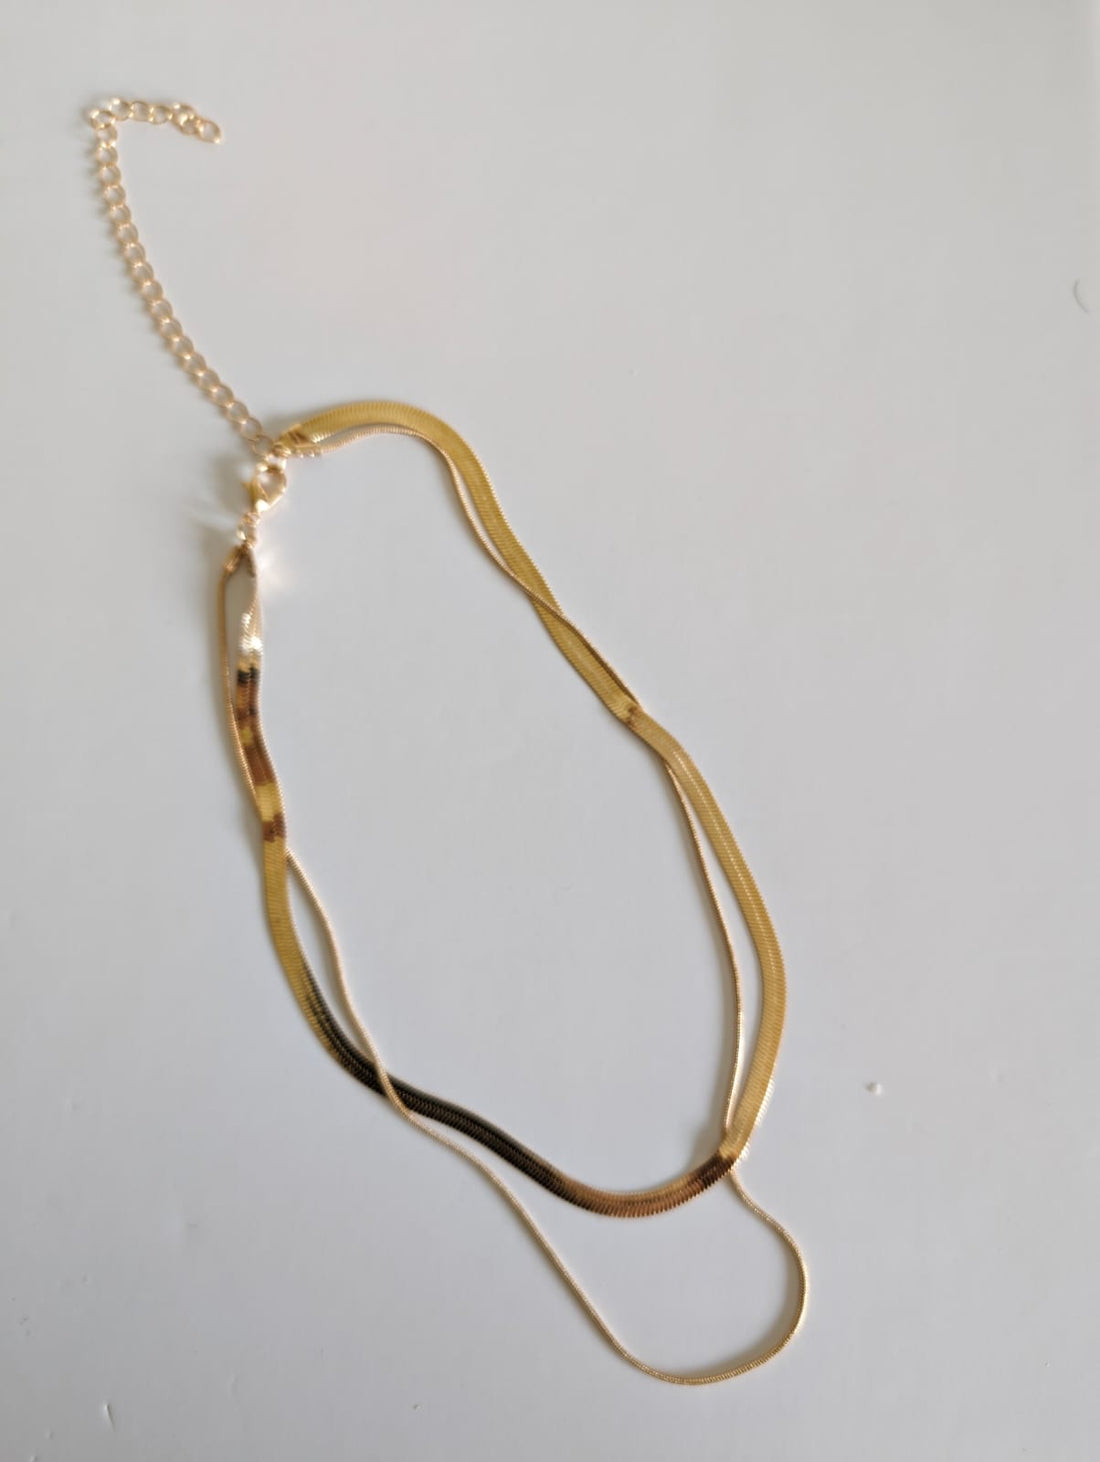 Golden Chain Necklace Ireland